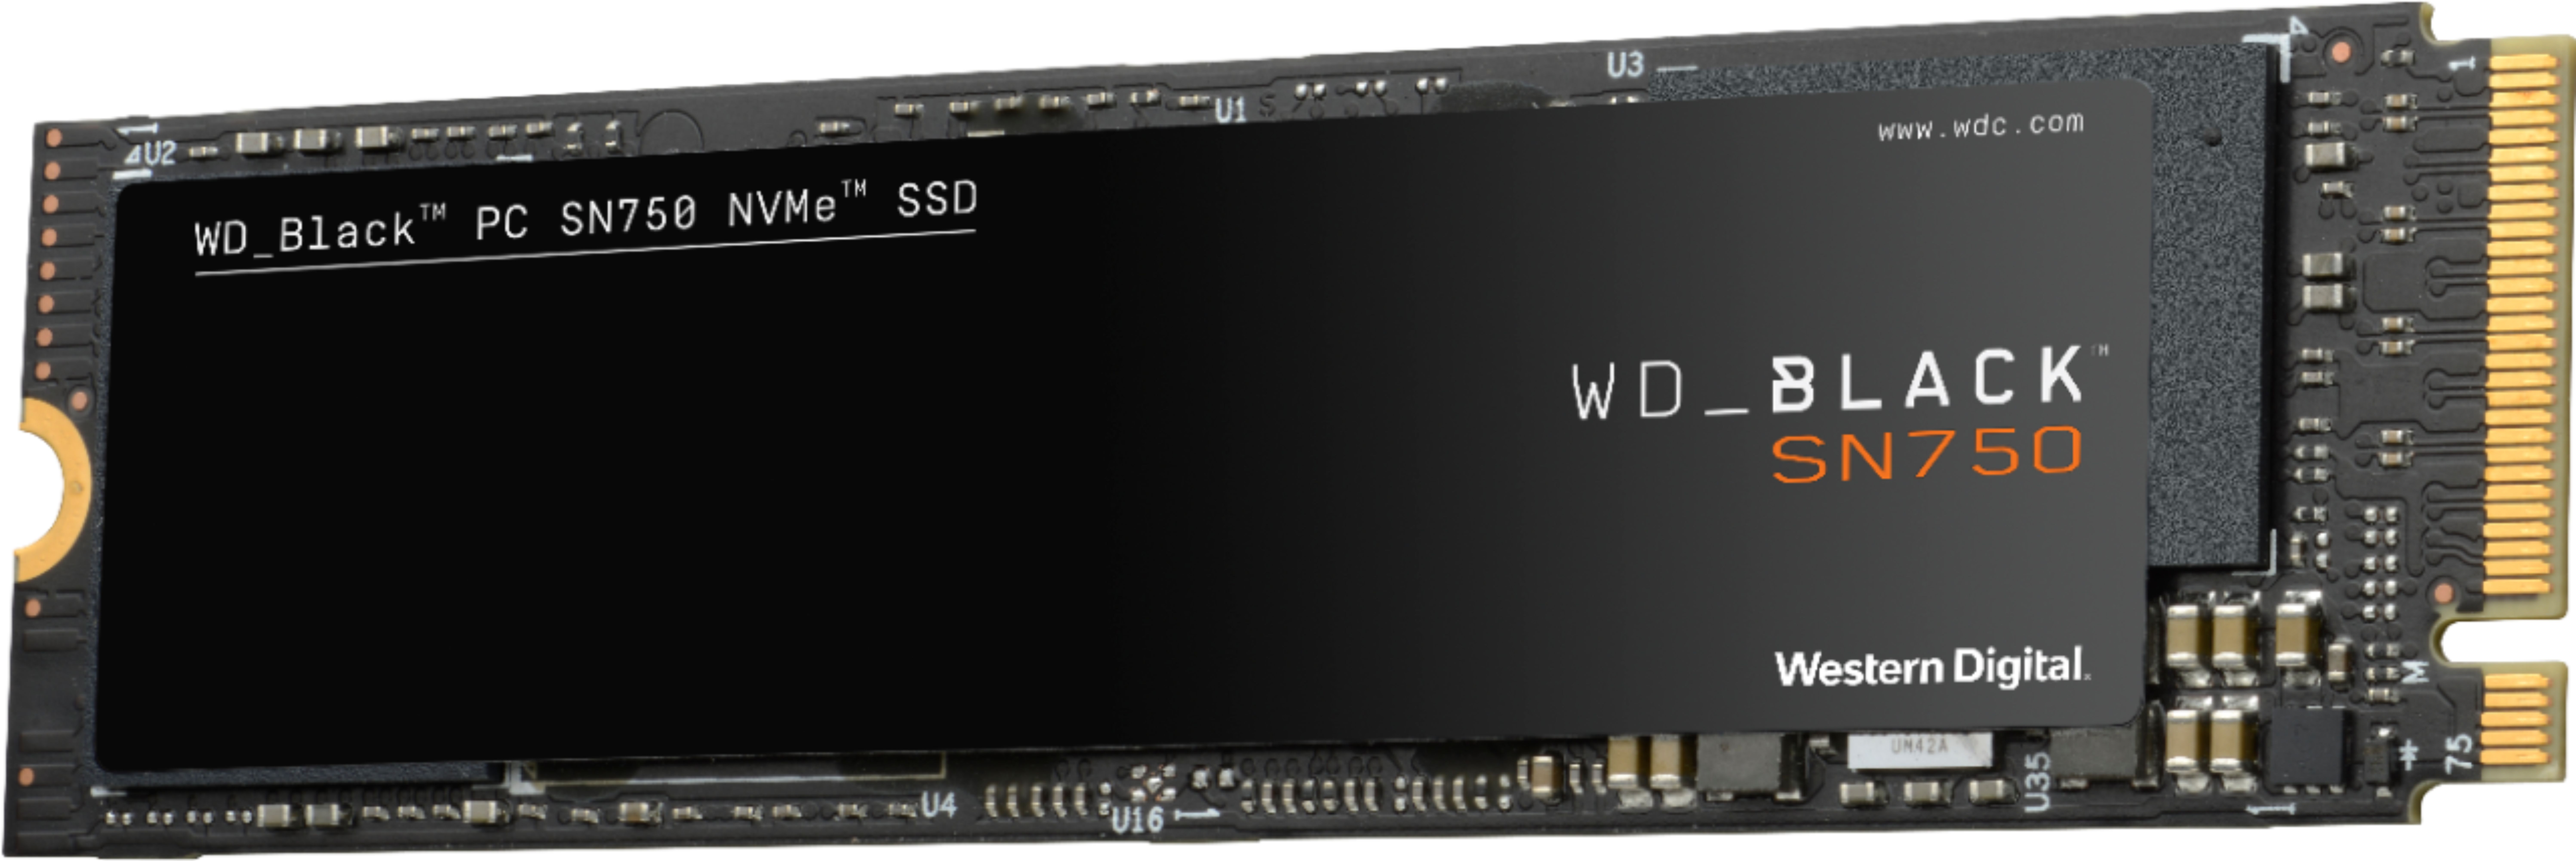 Wd Wd Black Sn750 Nvme Gaming 1tb Pcie Gen 3 X4 Internal Solid State Drive Wdbrpg0010bnc Wrsn Best Buy